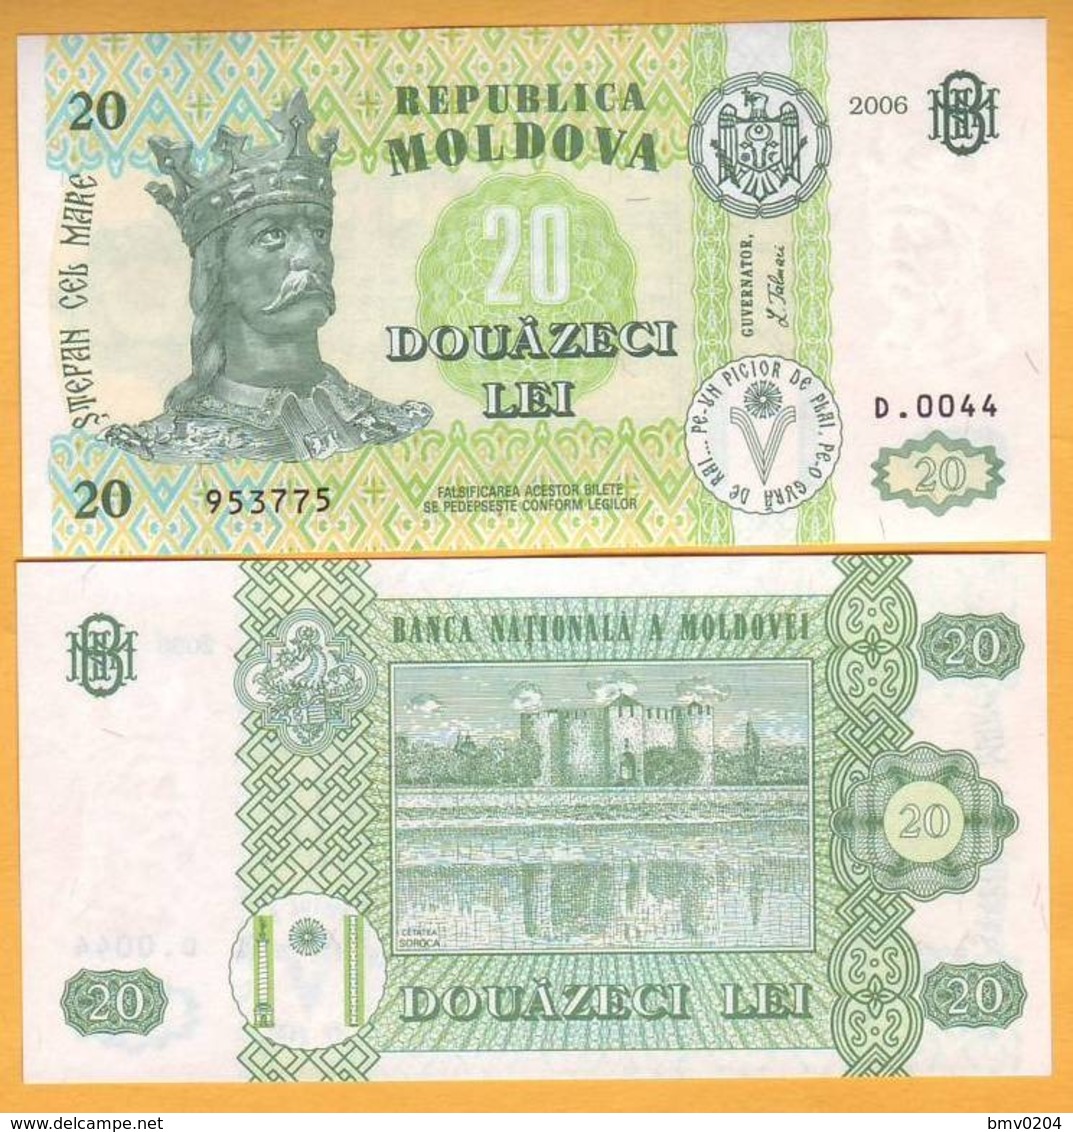 2006 Moldova ; Moldavie ; Moldau  "20 LEI  2006"  UNC 953775 - Moldova